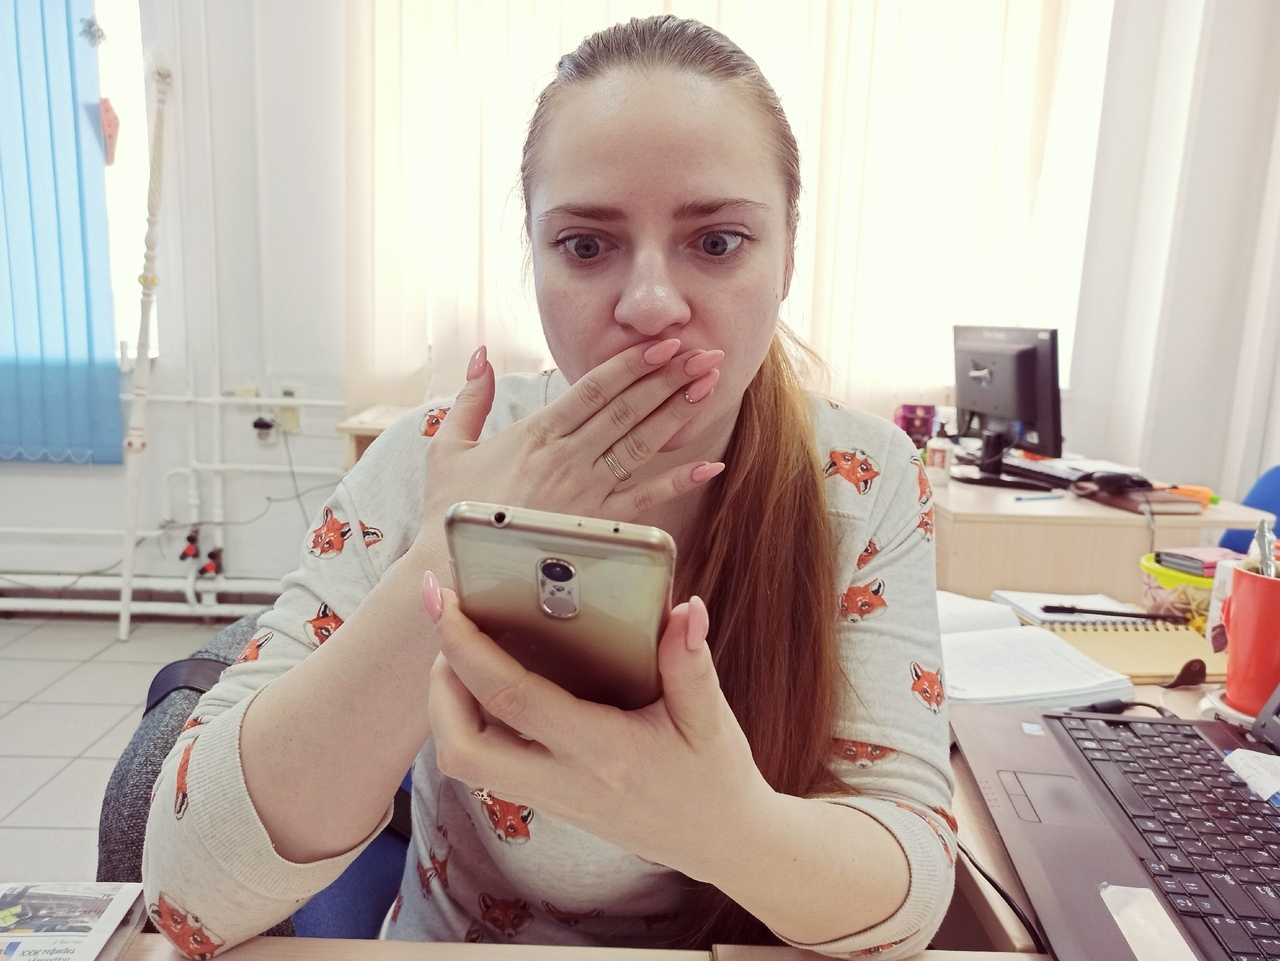 Спишут 100 тысяч за пару слов по телефону: новый способ атаки ярославцев придумали мошенники